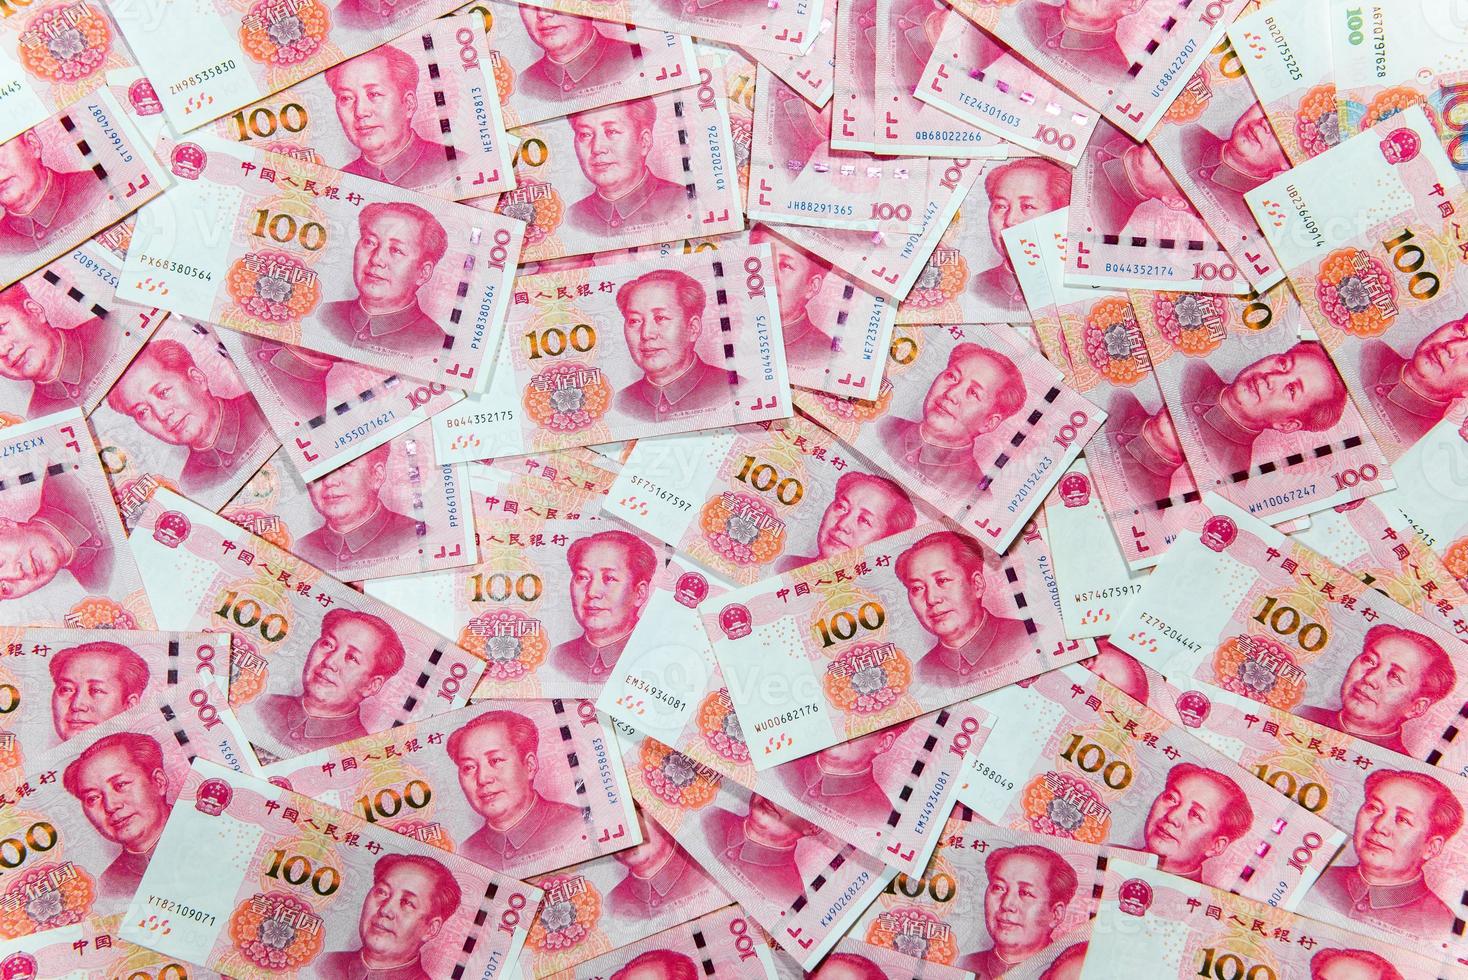 yuan o Rmb, chino moneda foto